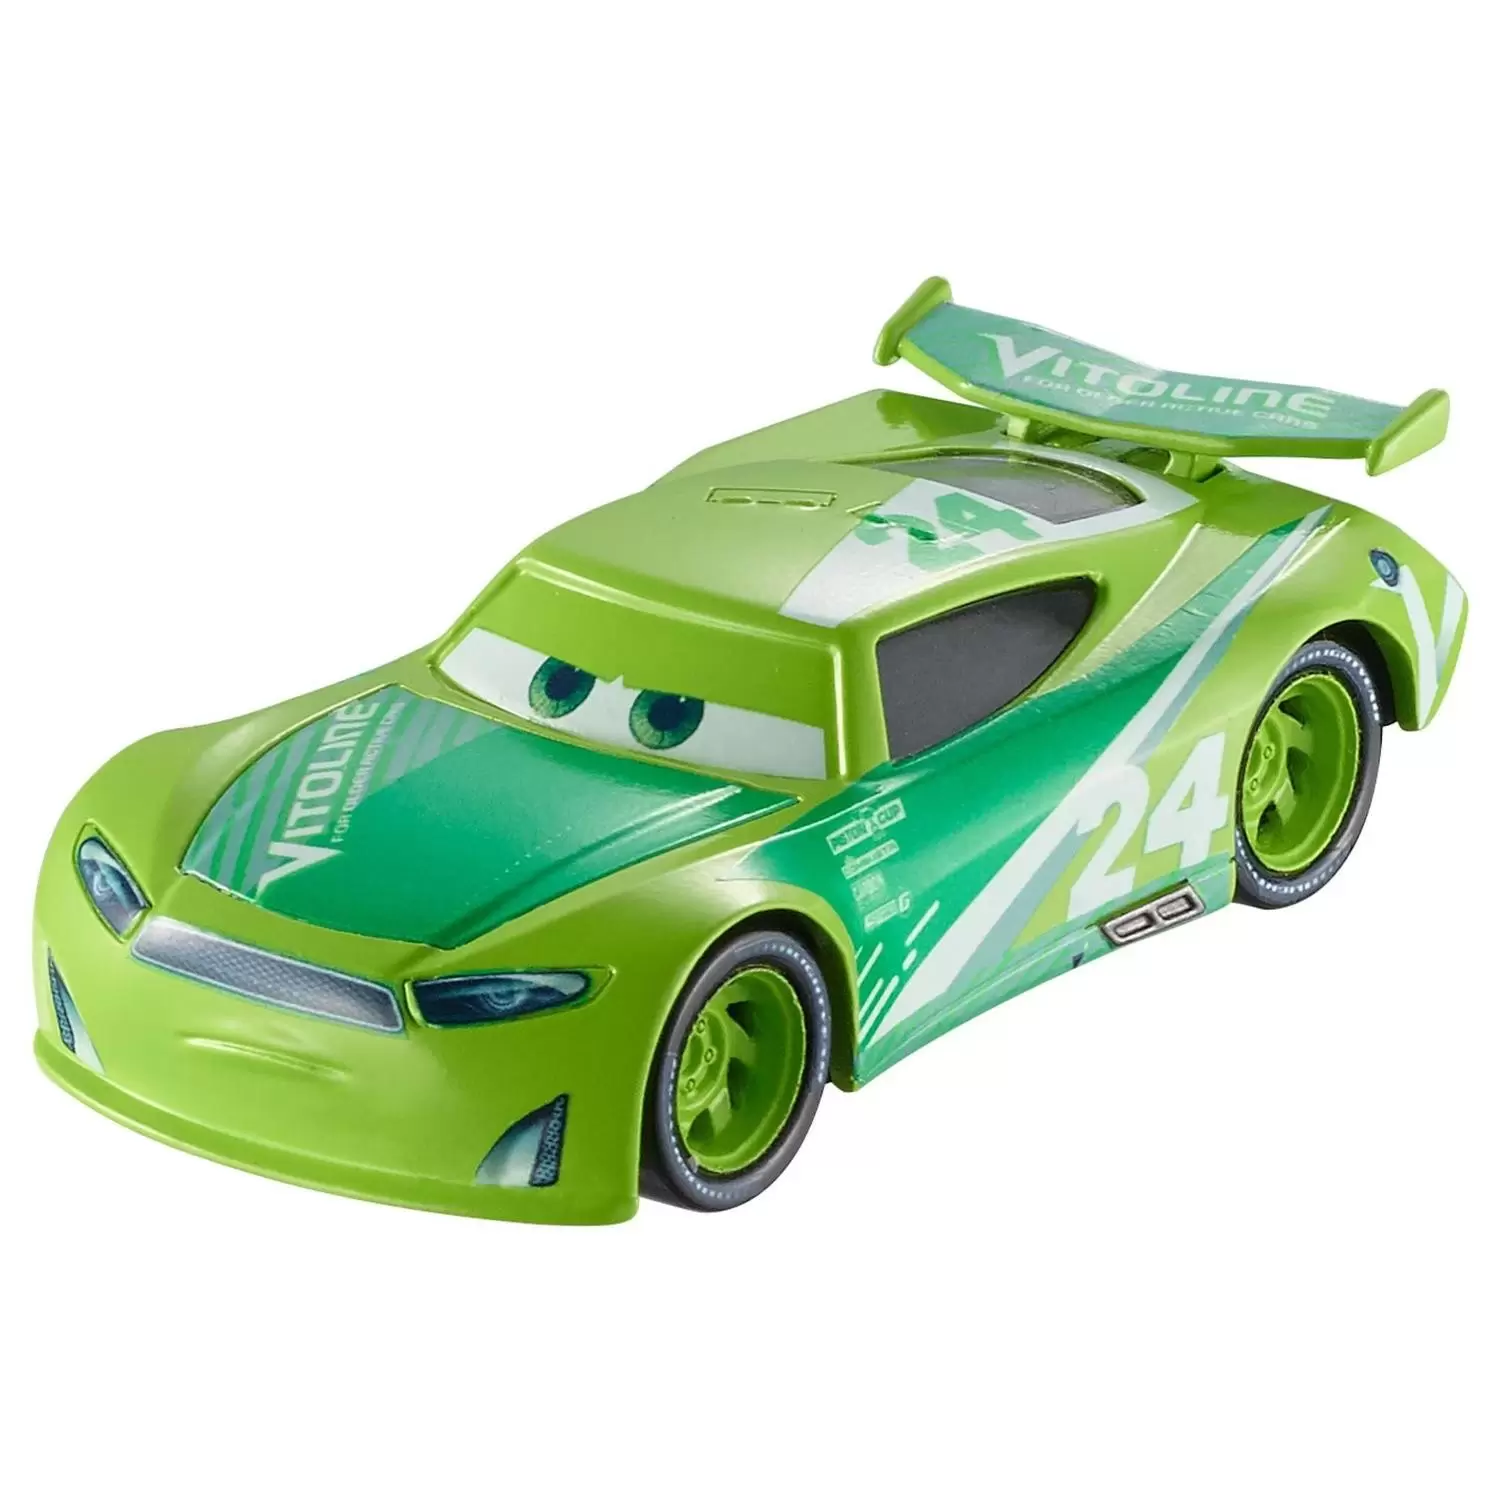 Cars 3 models - Chase Racelott 